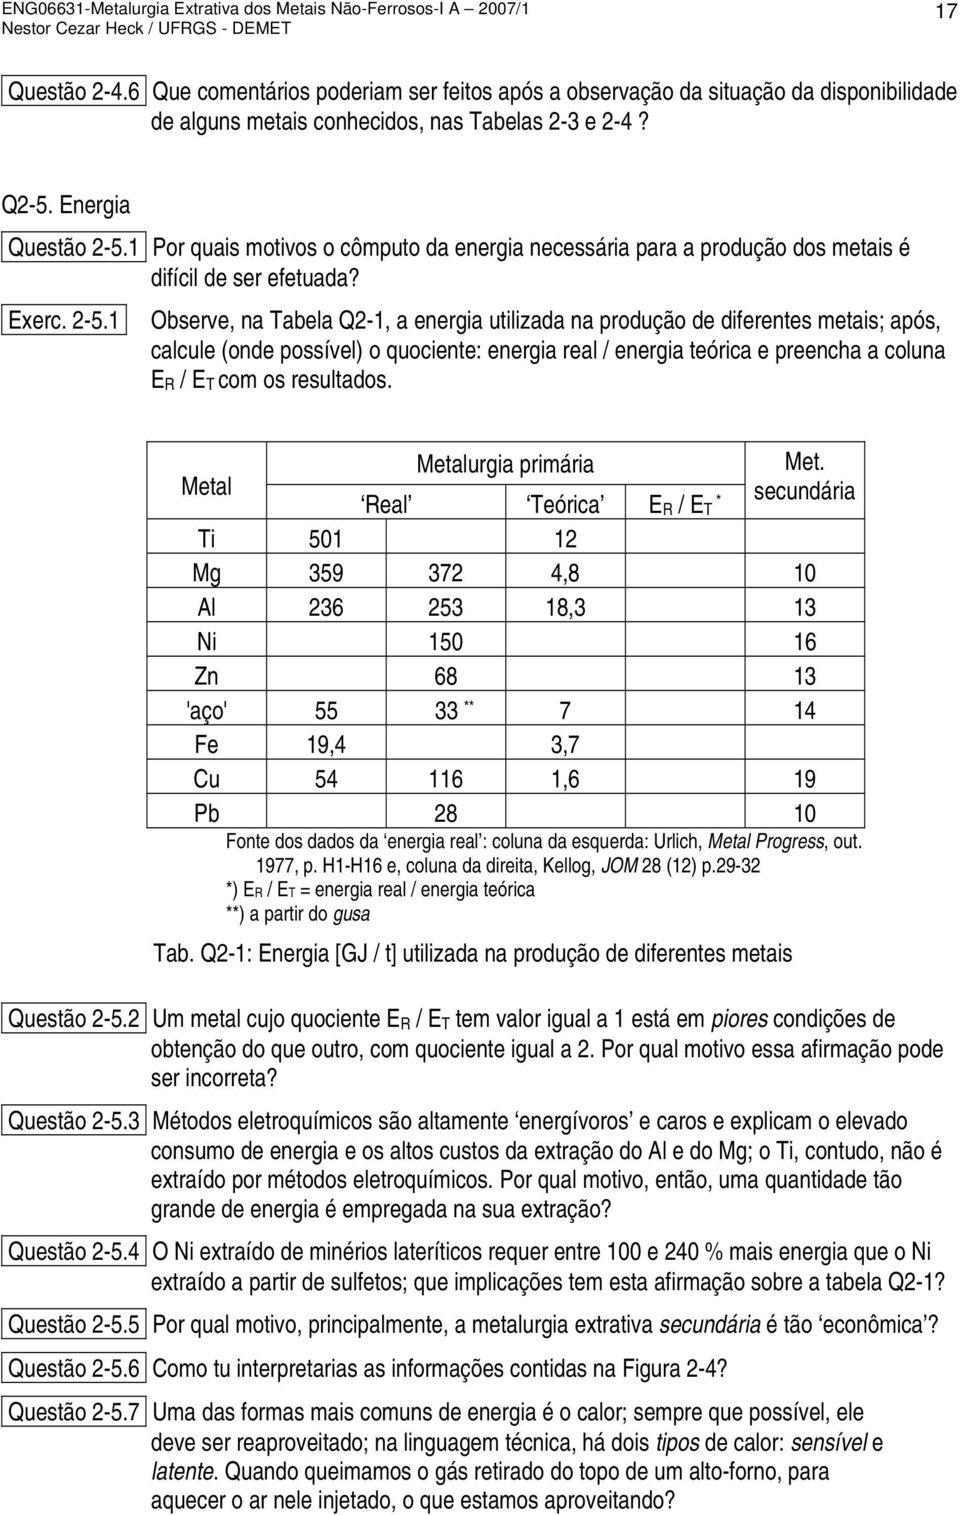 1 Observe, na Tabela Q2-1, a energia utilizada na produção de diferentes metais; após, calcule (onde possível) o quociente: energia real / energia teórica e preencha a coluna E R / E T com os